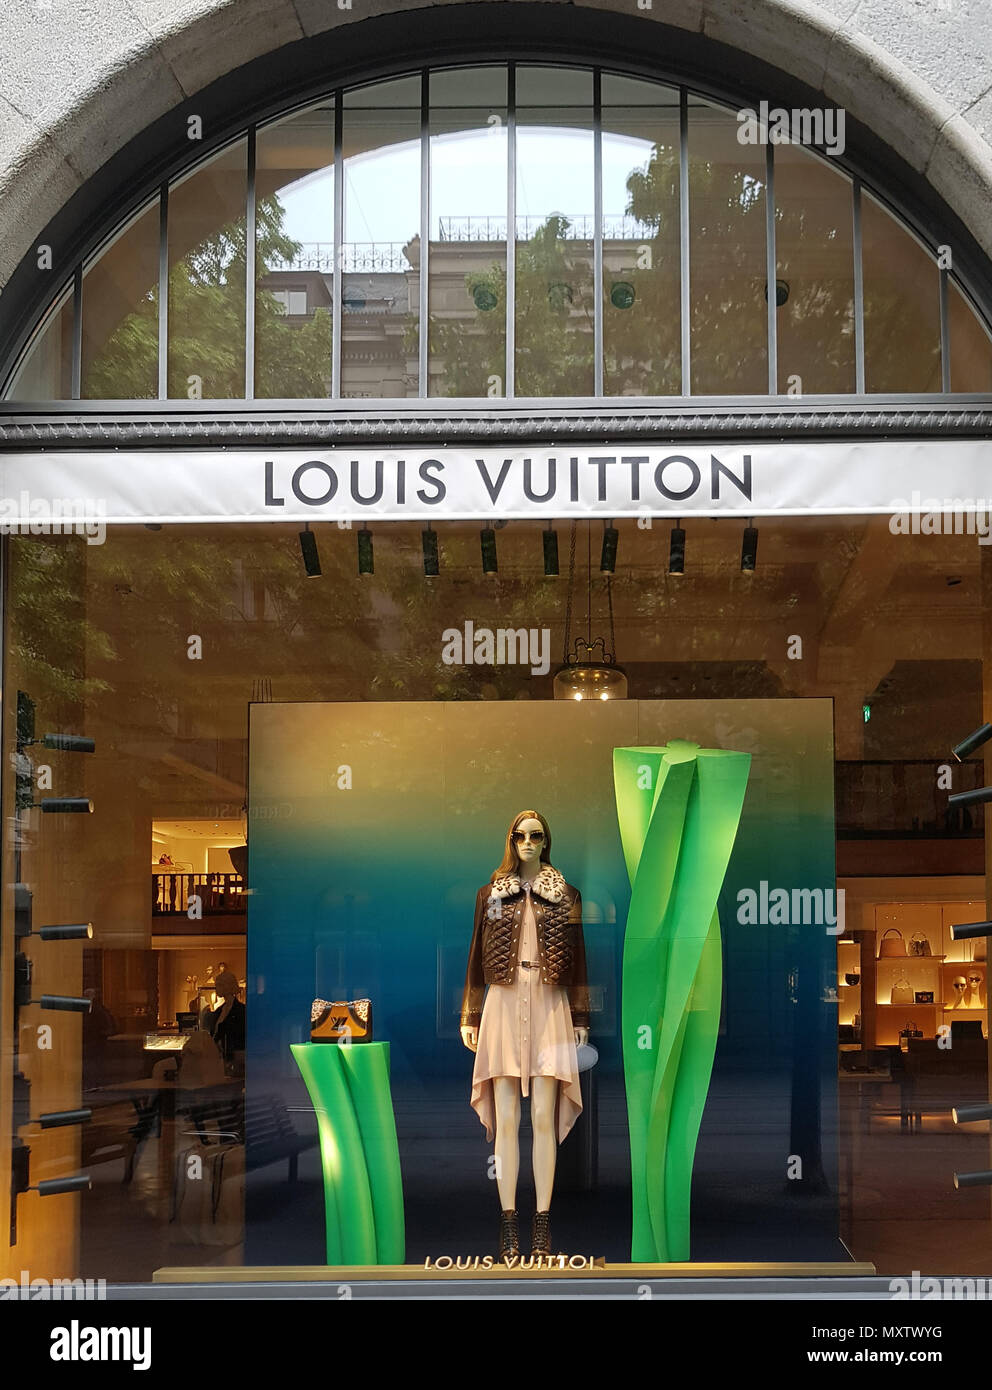 ZURICH, SWITZERLAND - MAY 18, 2018: View at Louis Vuitton shop in